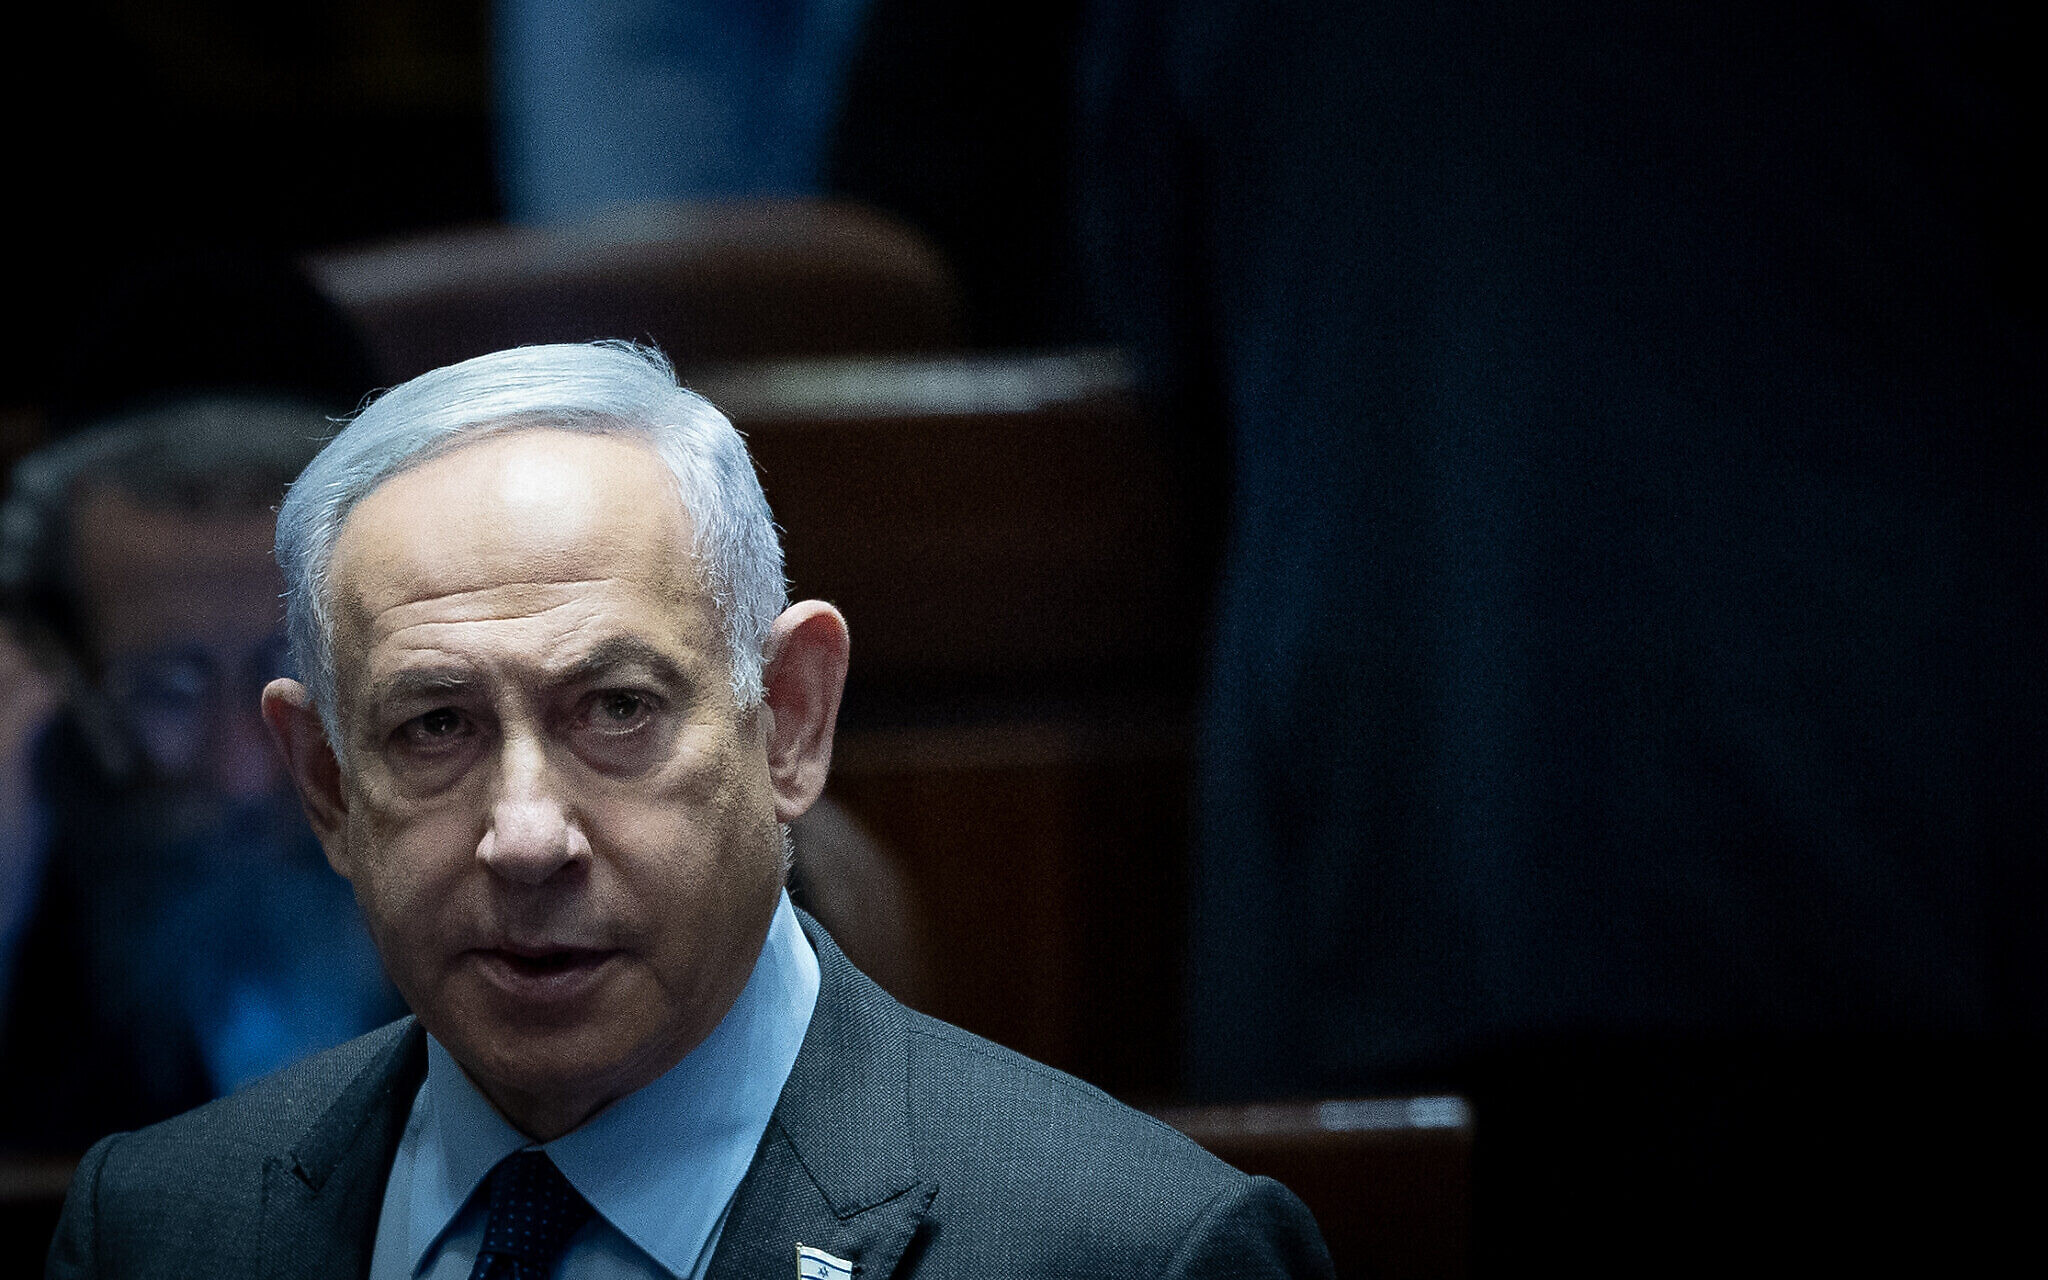 İşgal lideri Netenyahu'dan şiddet dolu açıklamalar gelmeye devam ediyor..